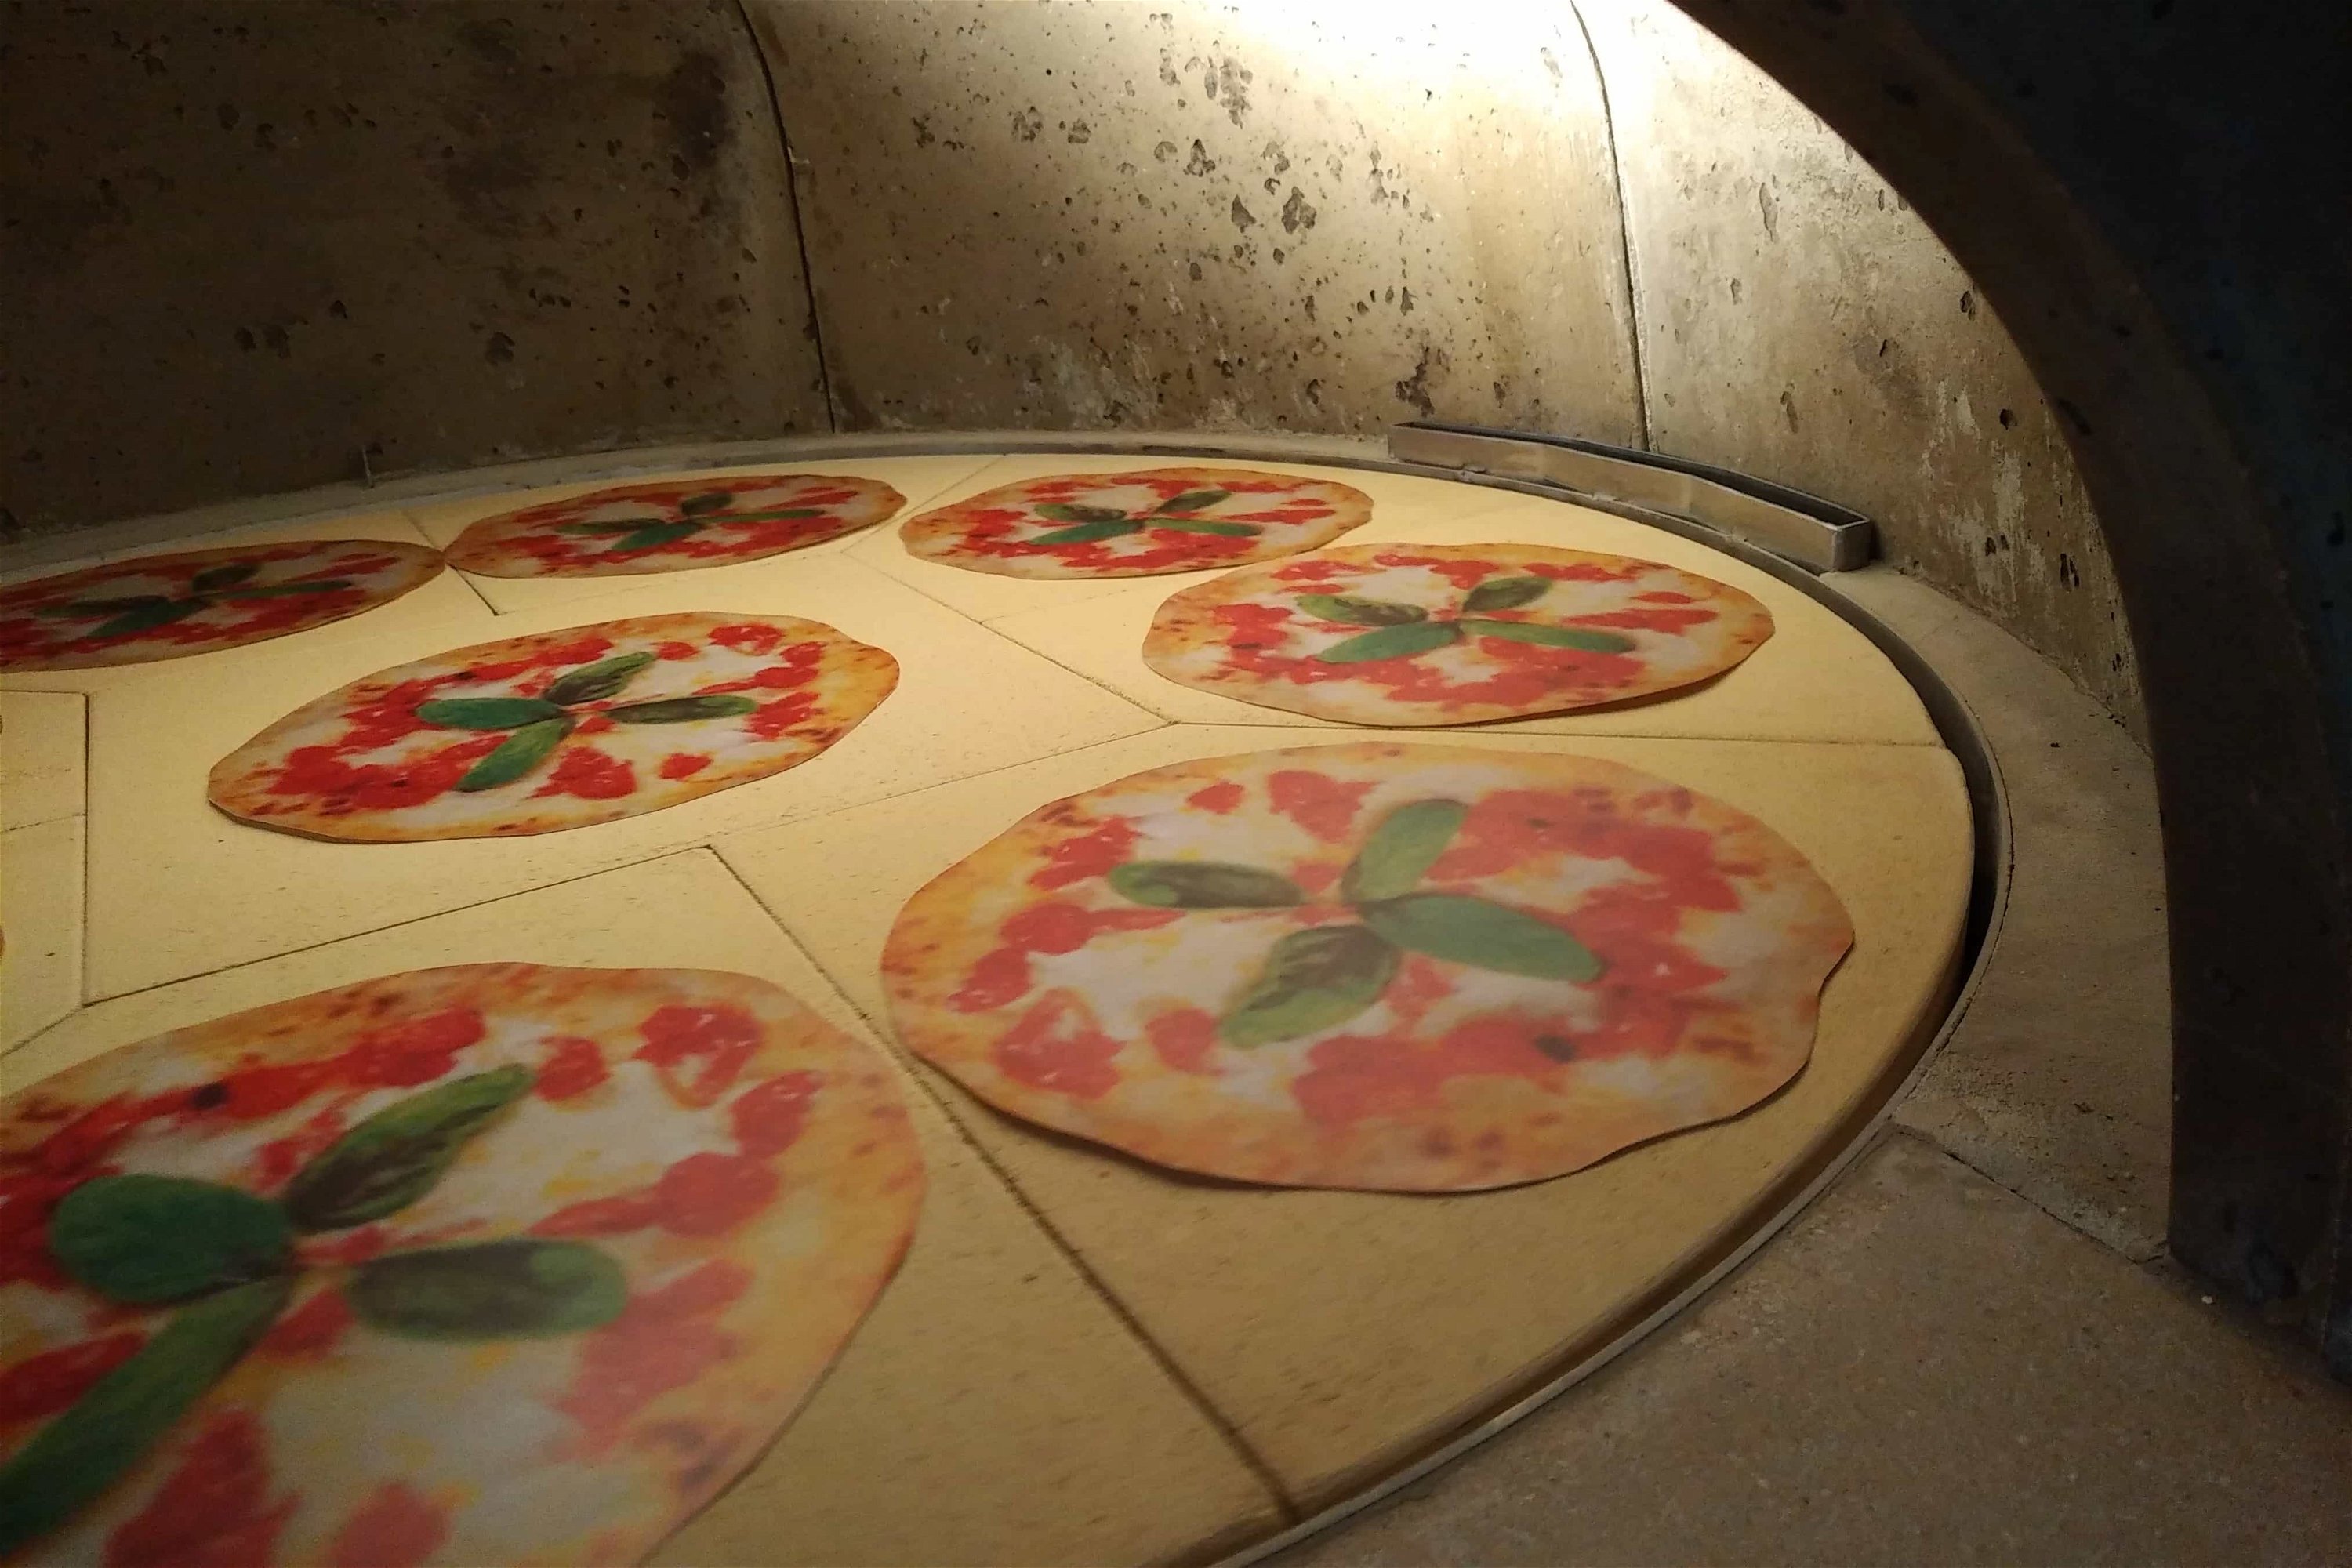 Gaspizzaofen Valoriani Rotativo: rotierender Pizzaofen, quadratisch, 100cm Durchmesser, für Gastro